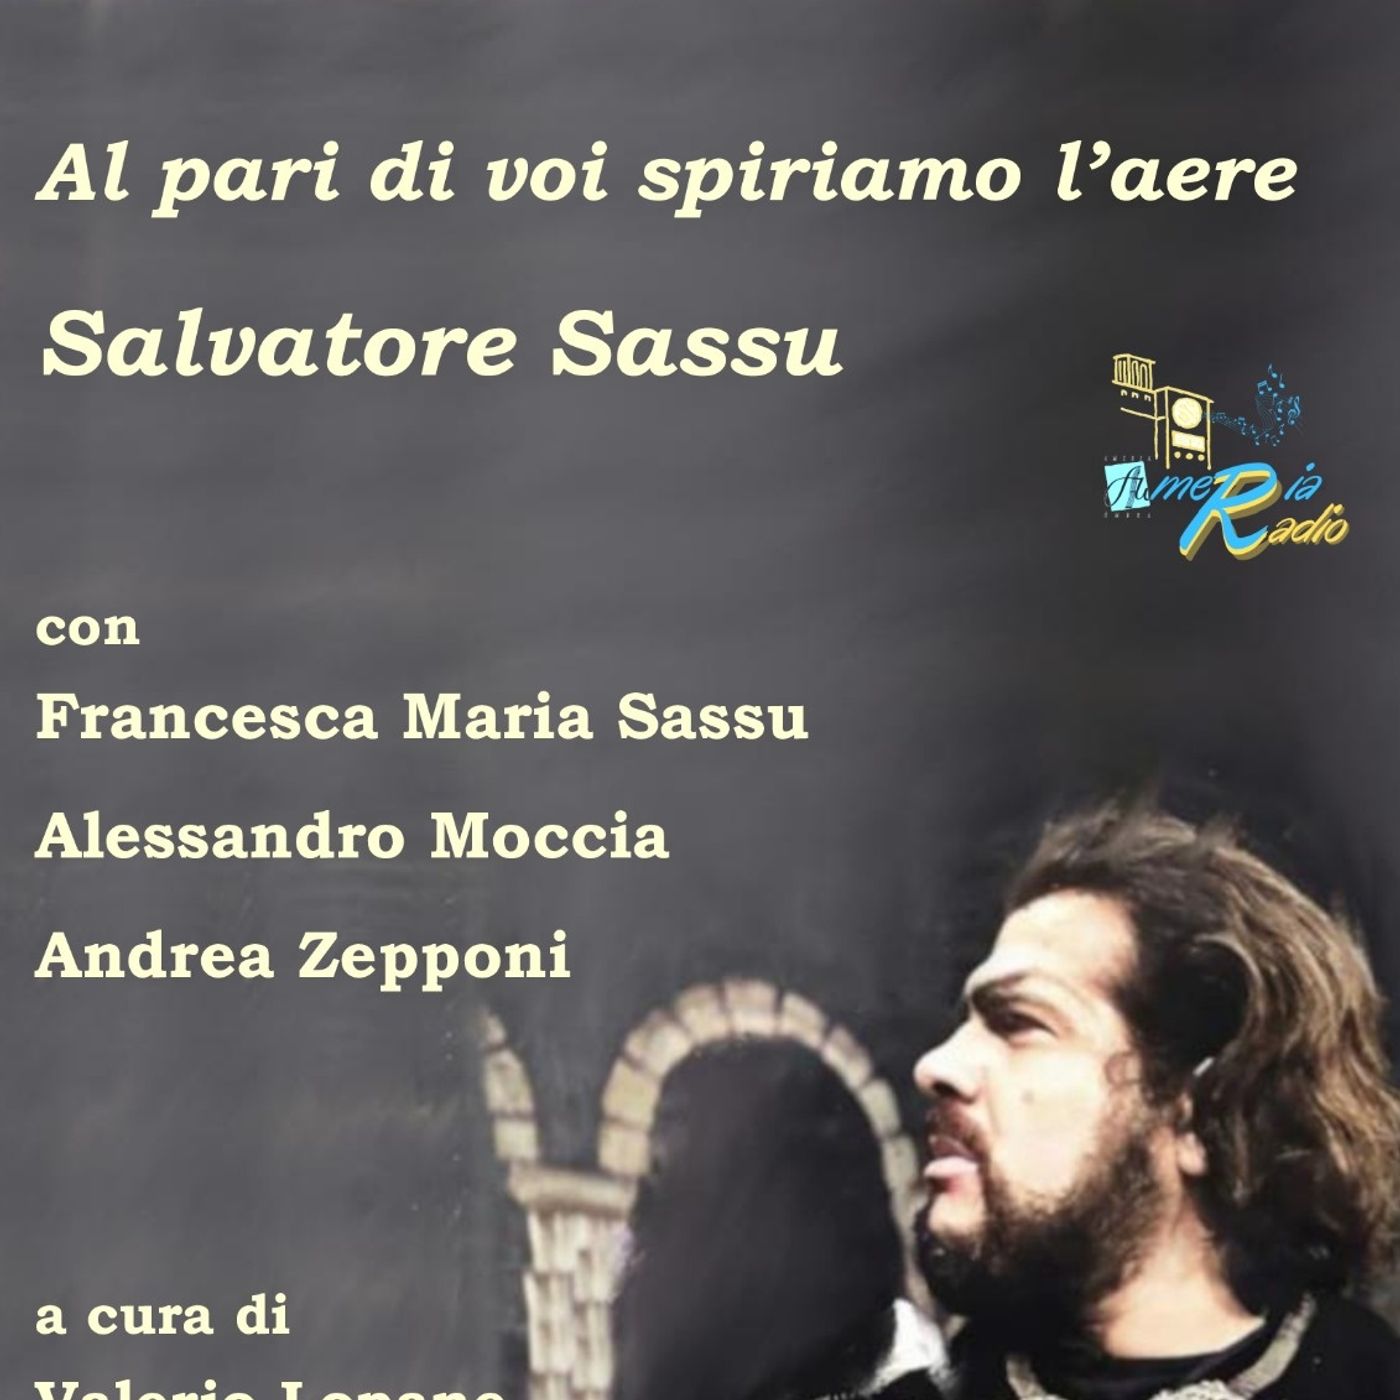 Tuttonel Mondo è Burla stasera all'Opera - In ricordo di Salvatore Sassu